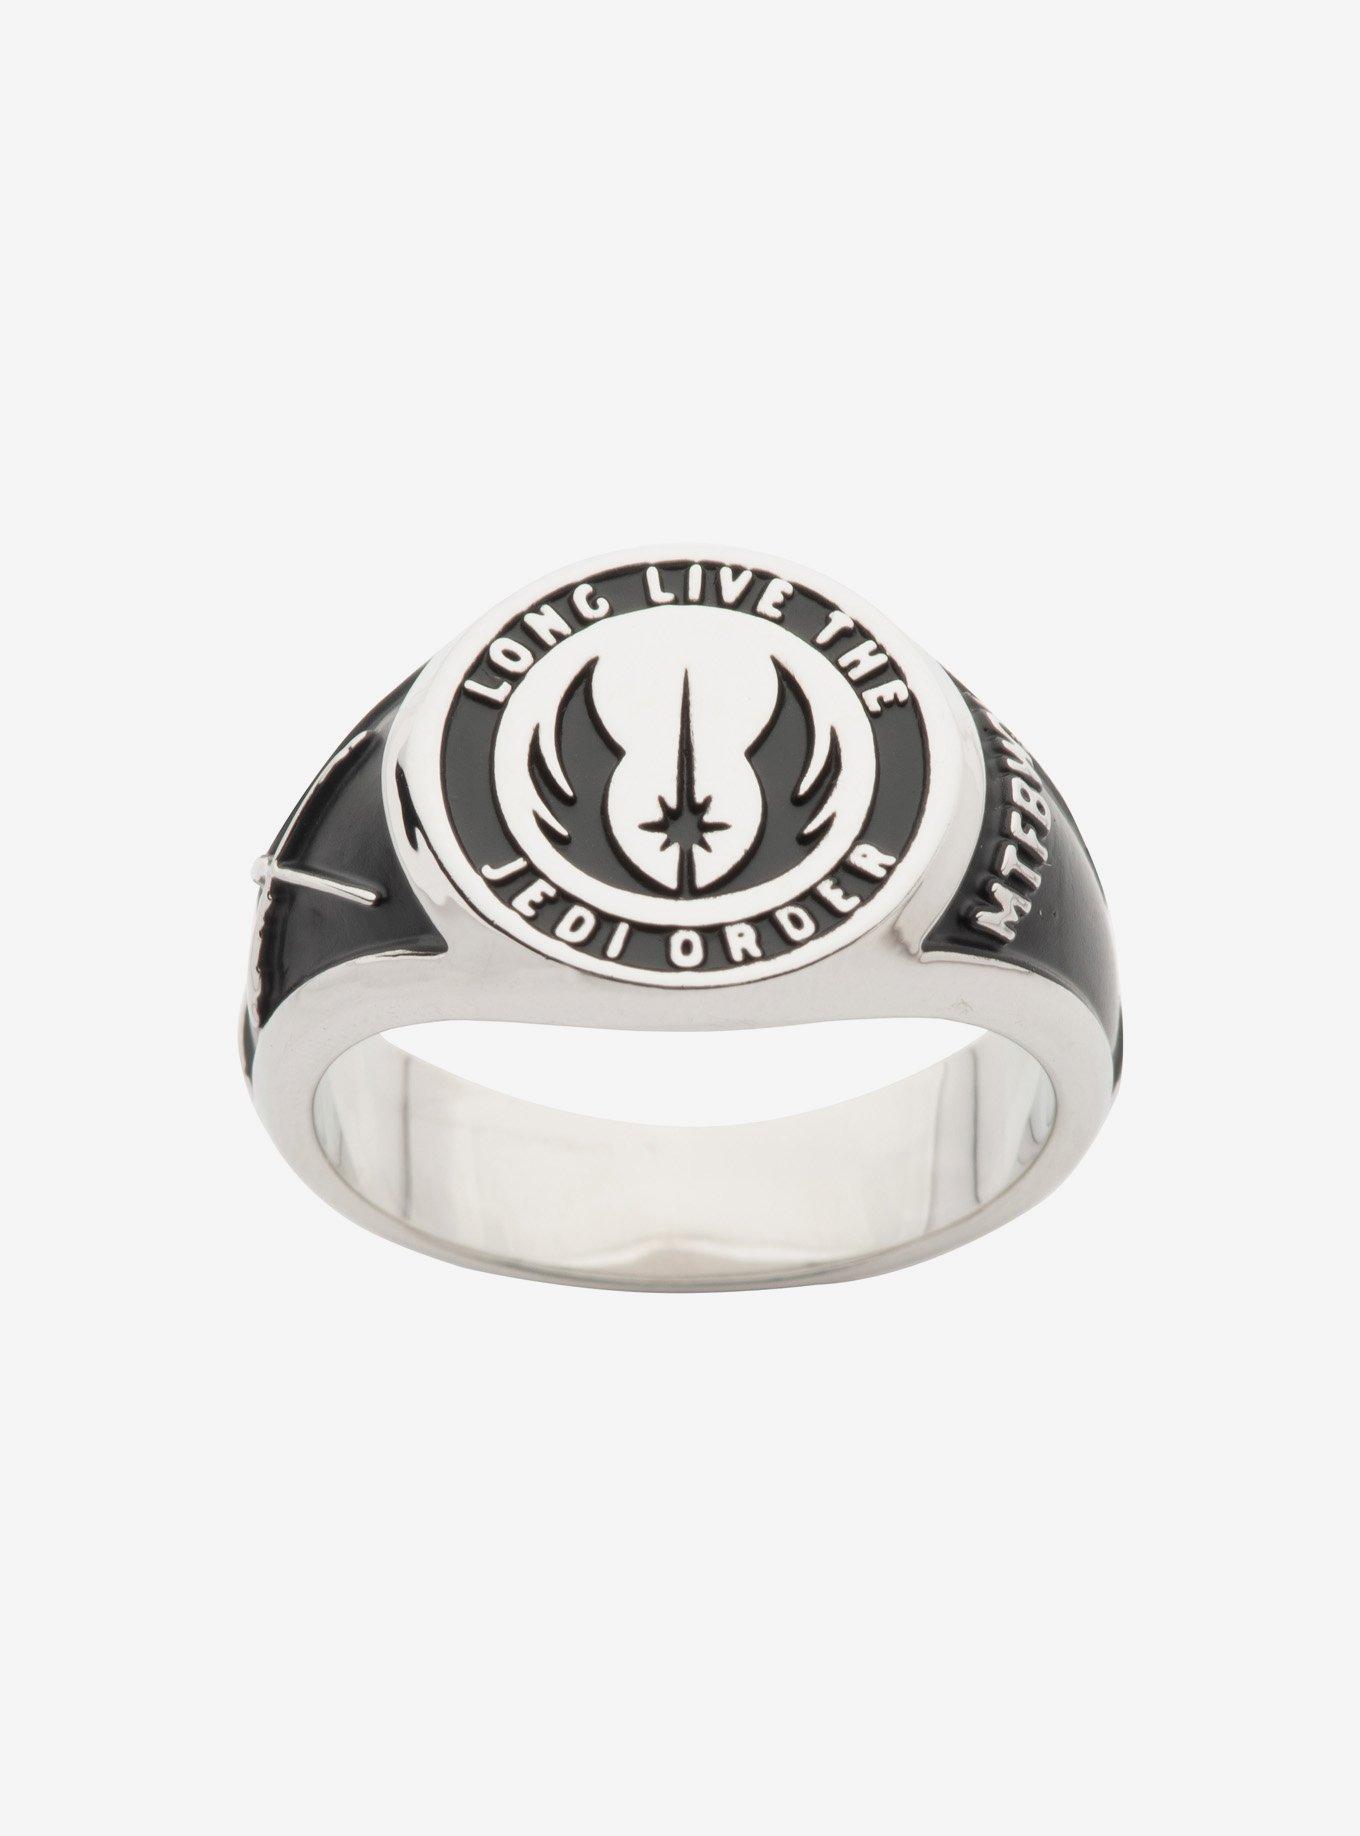 Star Wars Steel Obi-Wan Jedi Order Class Ring